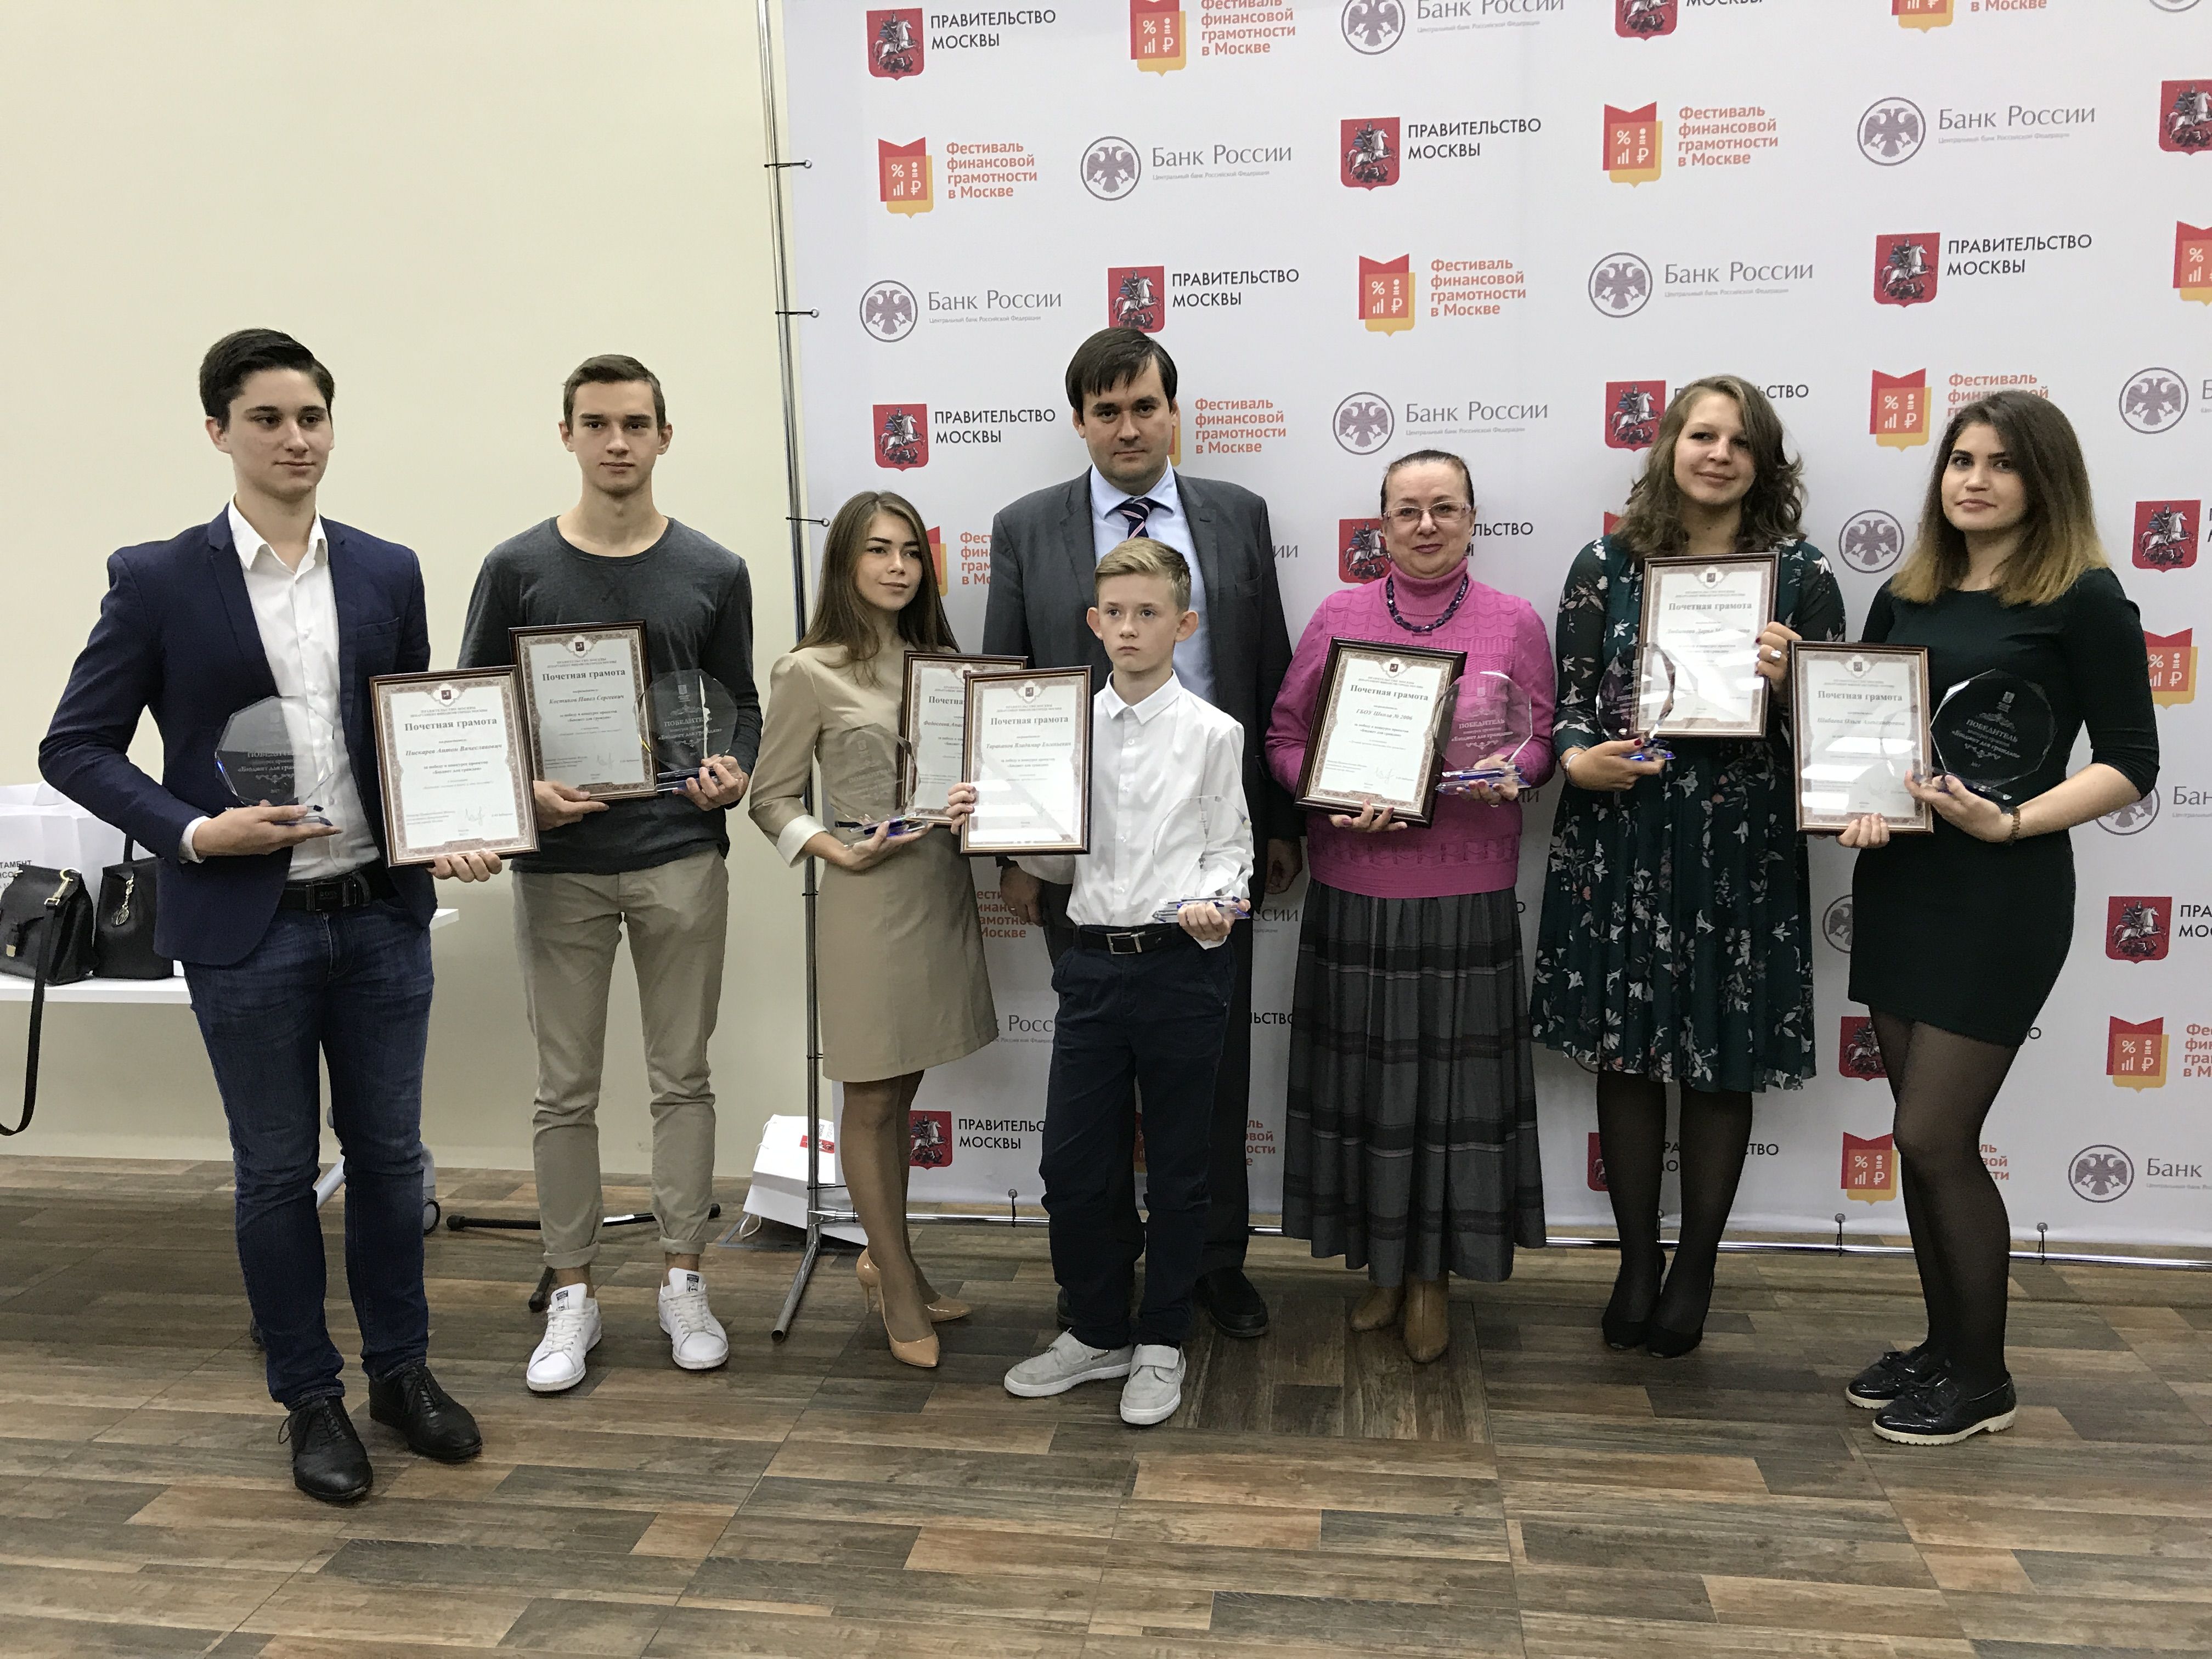 Фестиваль финансовой грамотности прошел в Москве 23 сентября